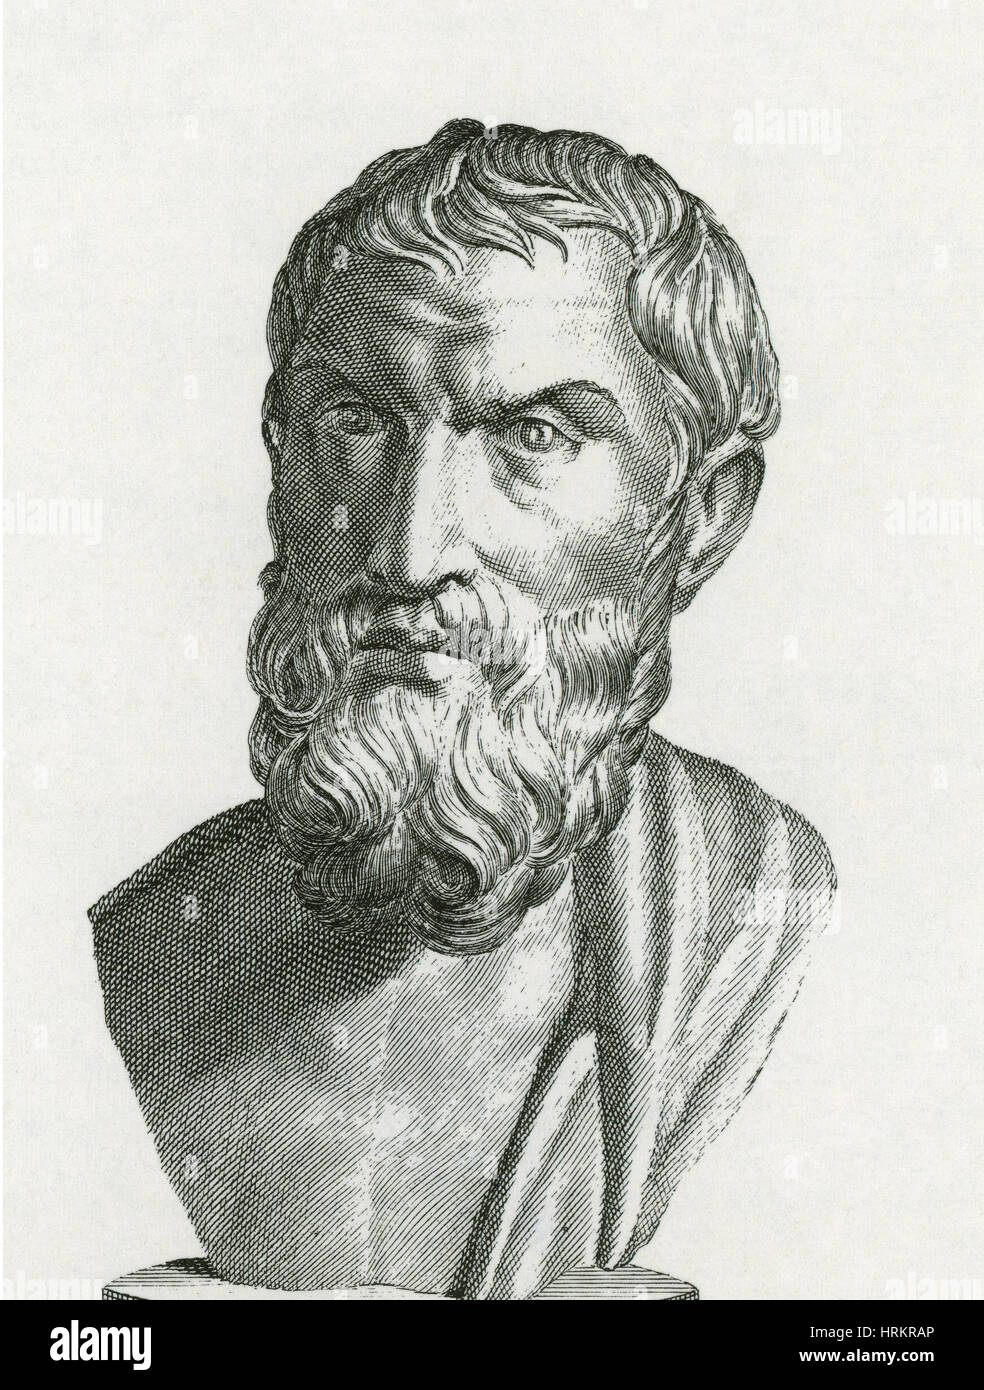 Epicure, philosophe grec Banque D'Images